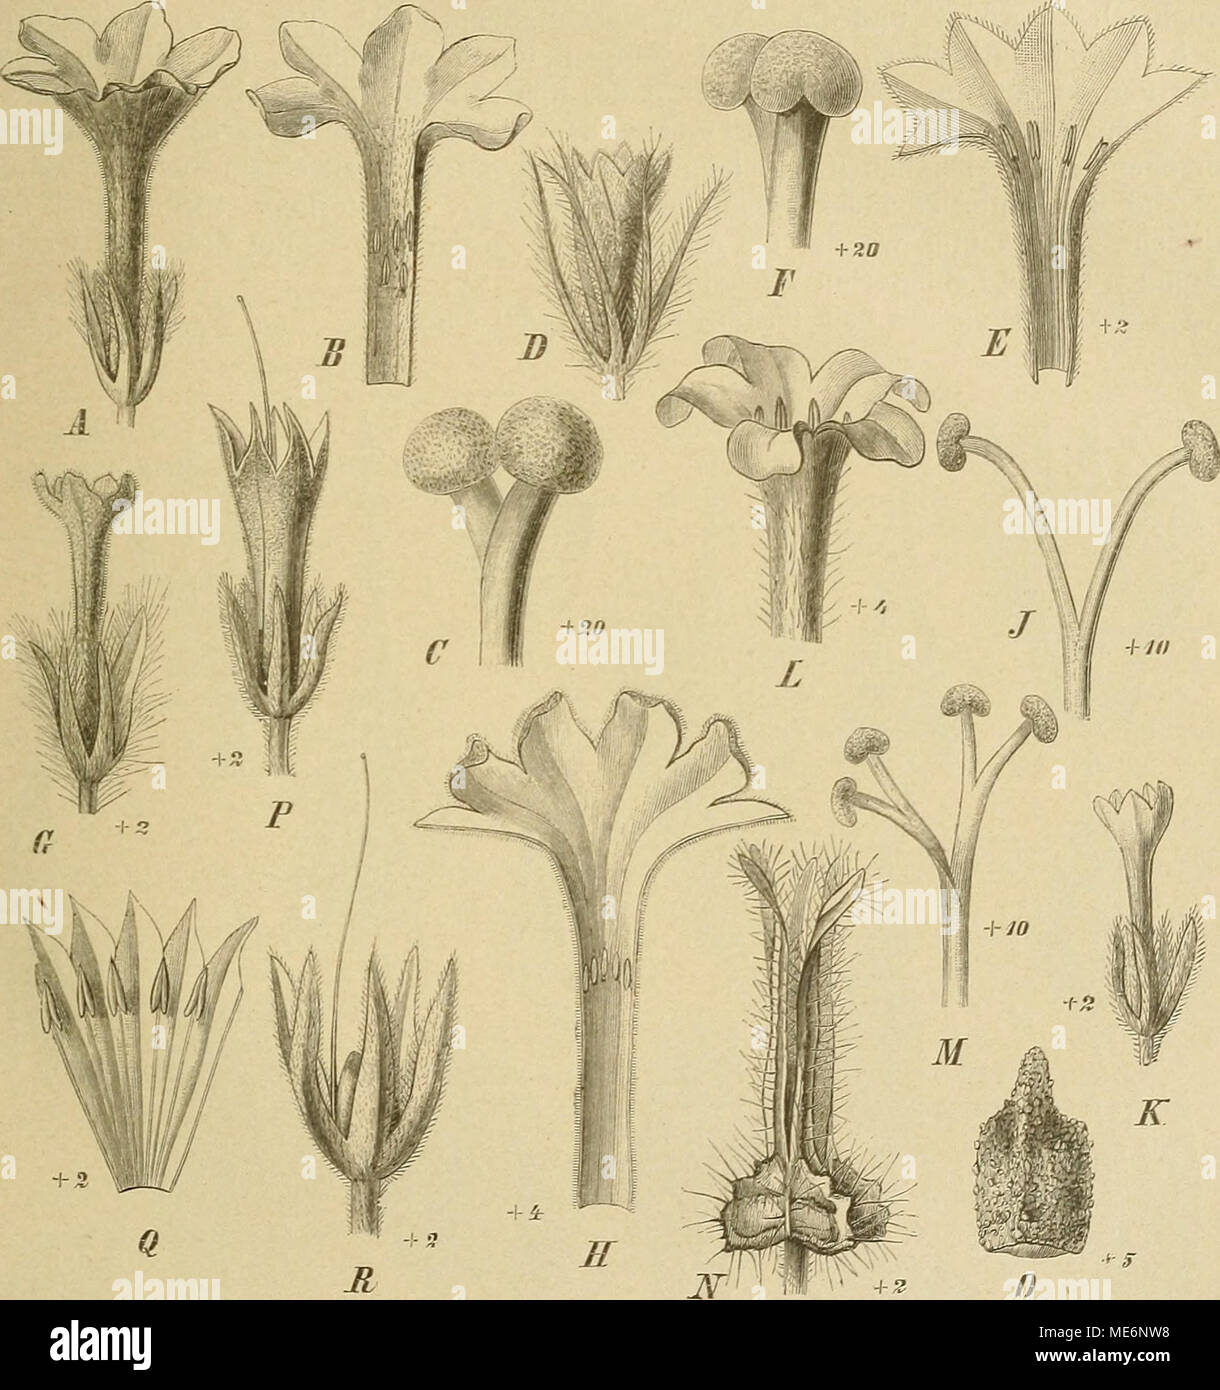 . Die Natürlichen Pflanzenfamilien : nebst ihren Gattungen und wichtigeren Arten, insbesondere den Nutzpflanzen . Fig. 5C. A, B Macrotomia echioides (L.) Boiss. A Bl. von außen ; B Bl. aufgeschaitten. — 0 31. cephalotes DC, oberer Teil des Gr. — D—F M. Benthami (Wall.) DC. D Bl. von außen; E BI. aufgeschnitten; F oberer Teil des ör. — 6—J Arnebia •hispidissima (Spreng.) DC. 0 Bl. von außen; E Bl. aufgeschnitten; J oberer Teil des Gr. — E—0 A. decumbens (Yeat.) Coss. et Kral. K Bl. von außen; L oberer Teil der Blkr. von außen; M oberer Teil des Gr.; X Kelch zur Frnchtzeit; 0 Klause. — PB Onosm Stock Photo